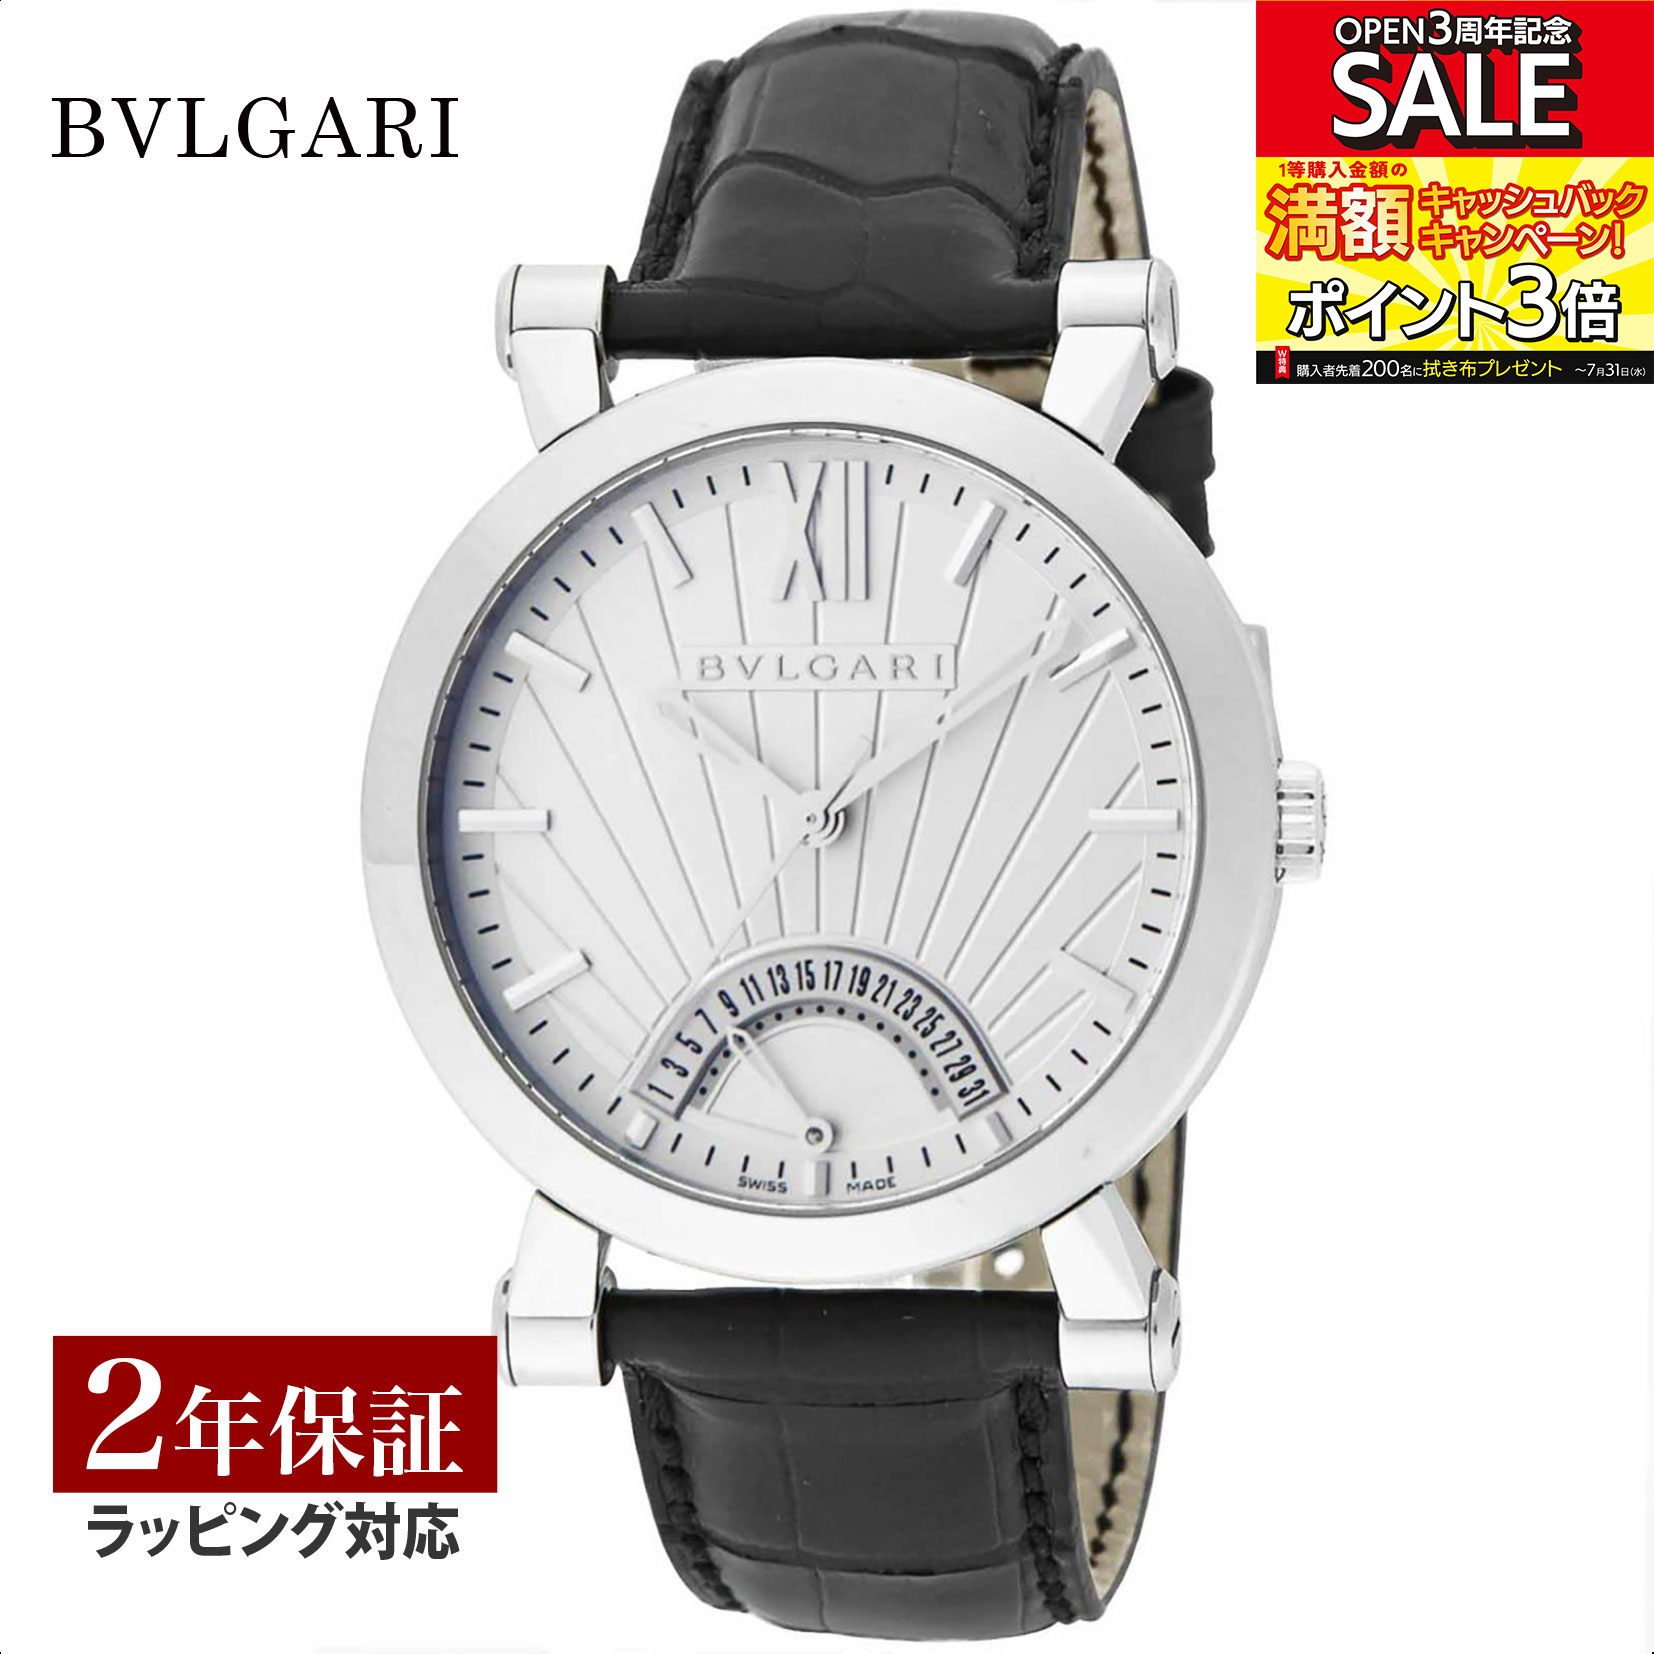 ブルガリブルガリ 腕時計（メンズ） ブルガリ BVLGARI メンズ 時計 Bvlgari Bvlgari ブルガリブルガリ 自動巻 ホワイト SB42WSLDR 時計 腕時計 高級腕時計 ブランド 【ローン金利無料】